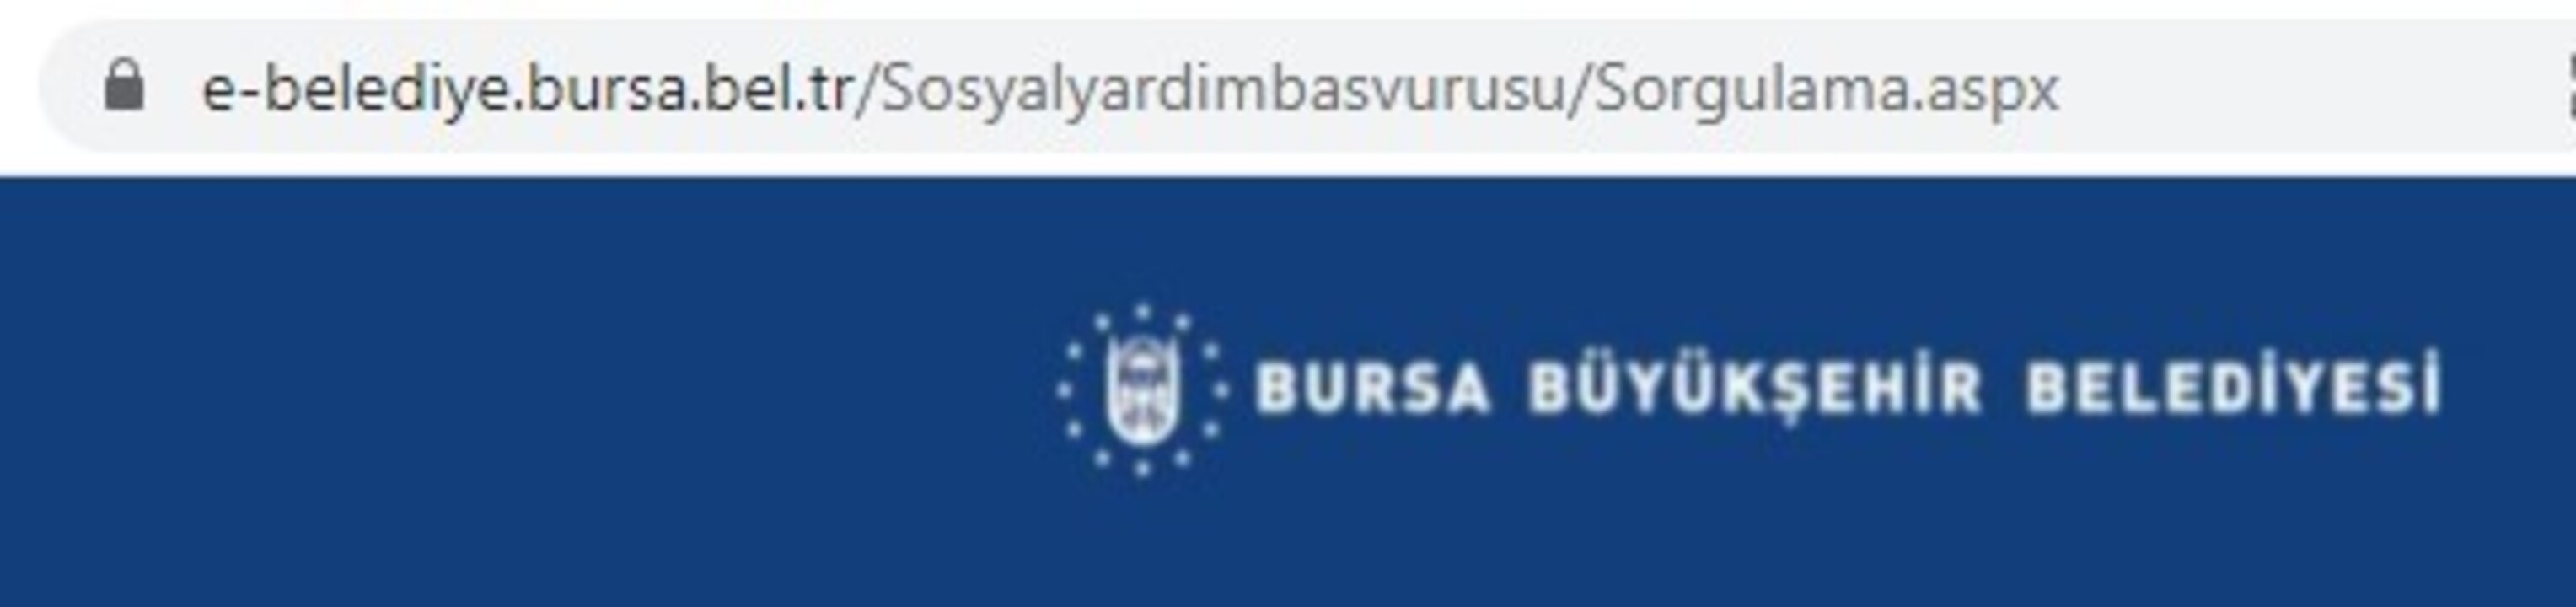 Bursa Büyükşehir Belediyesi sosyal yardım başvurusu nasıl yapılır?